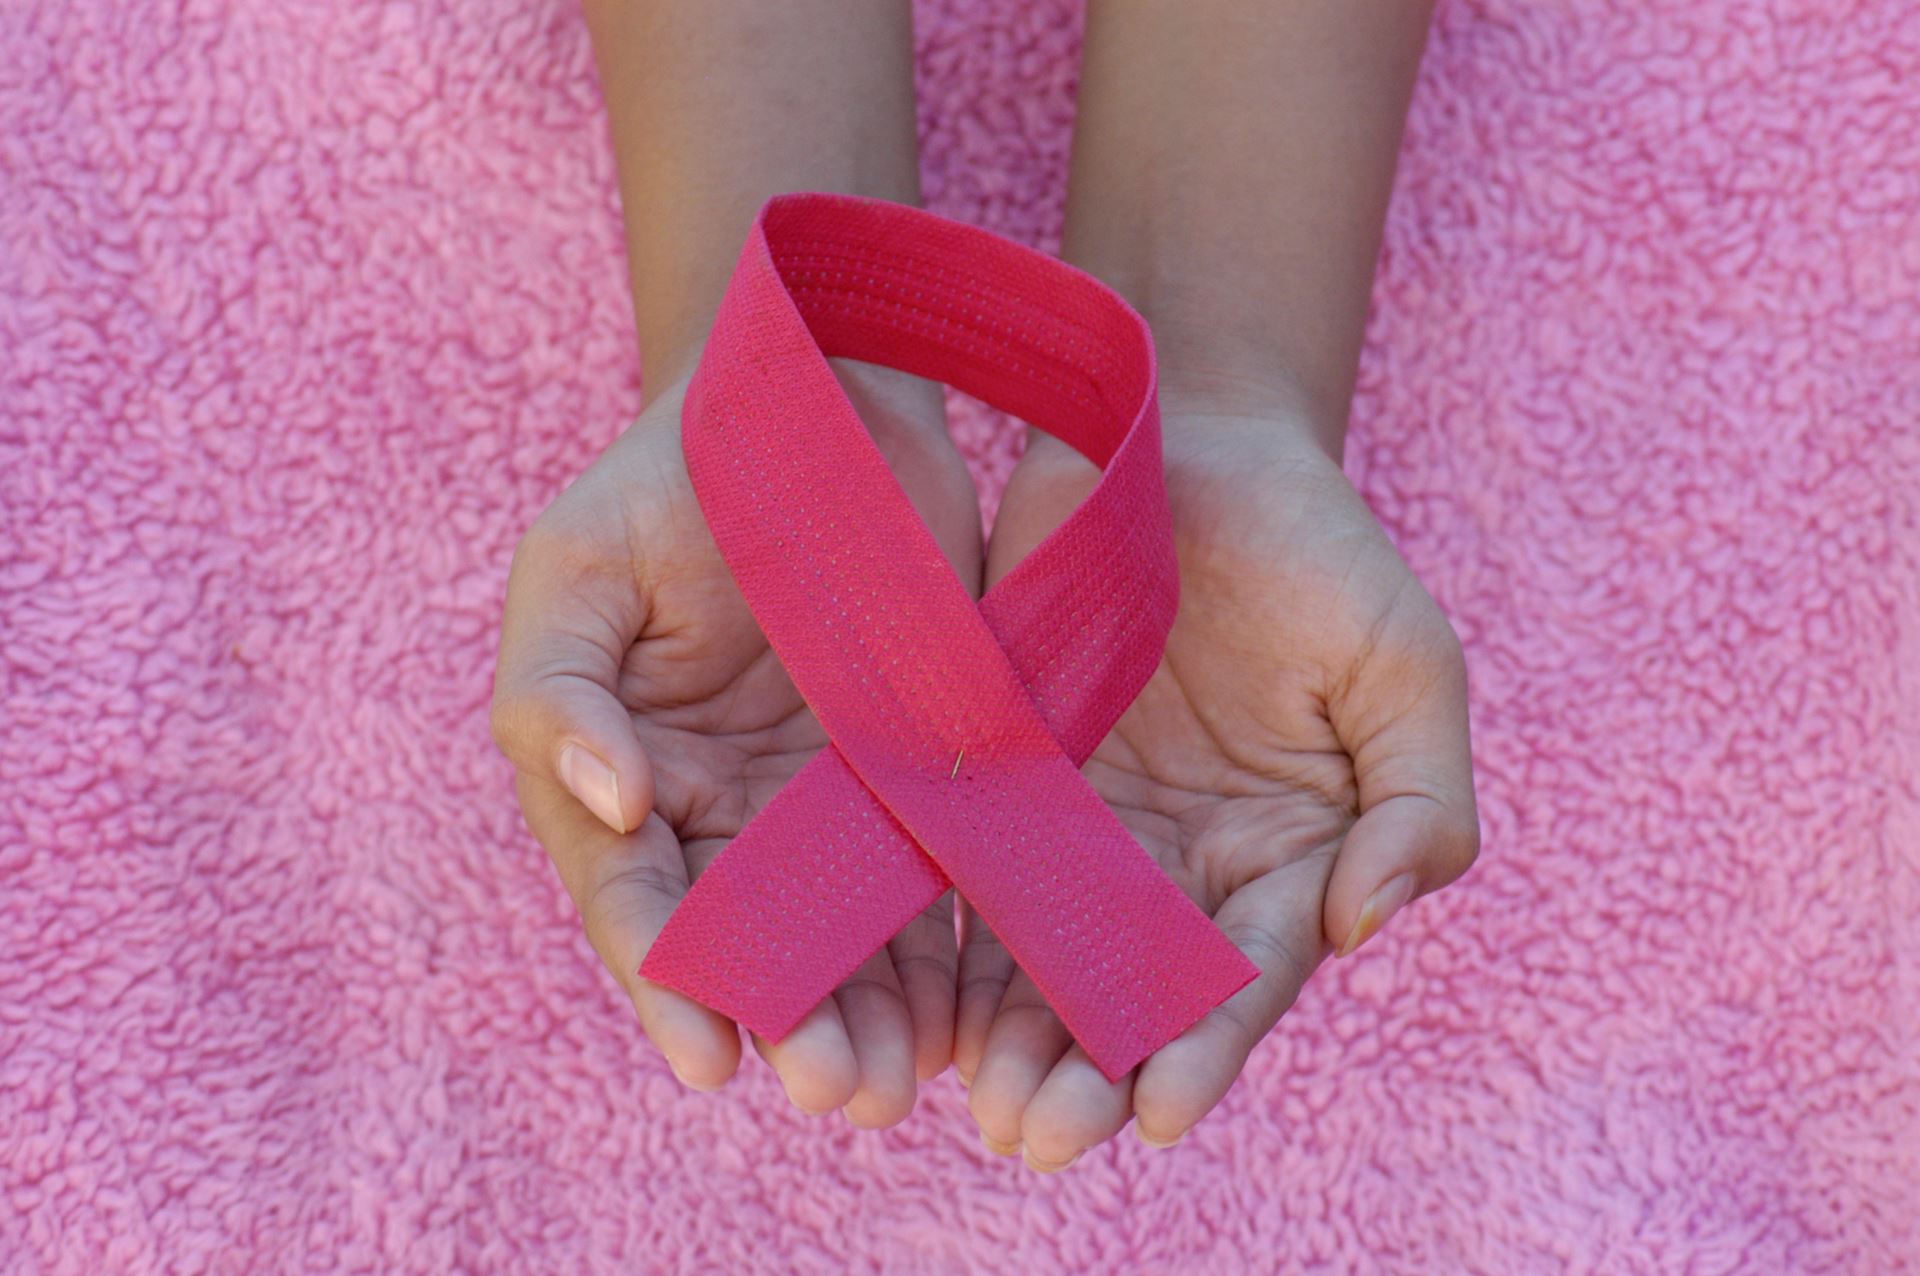 breast screening pink riibbon